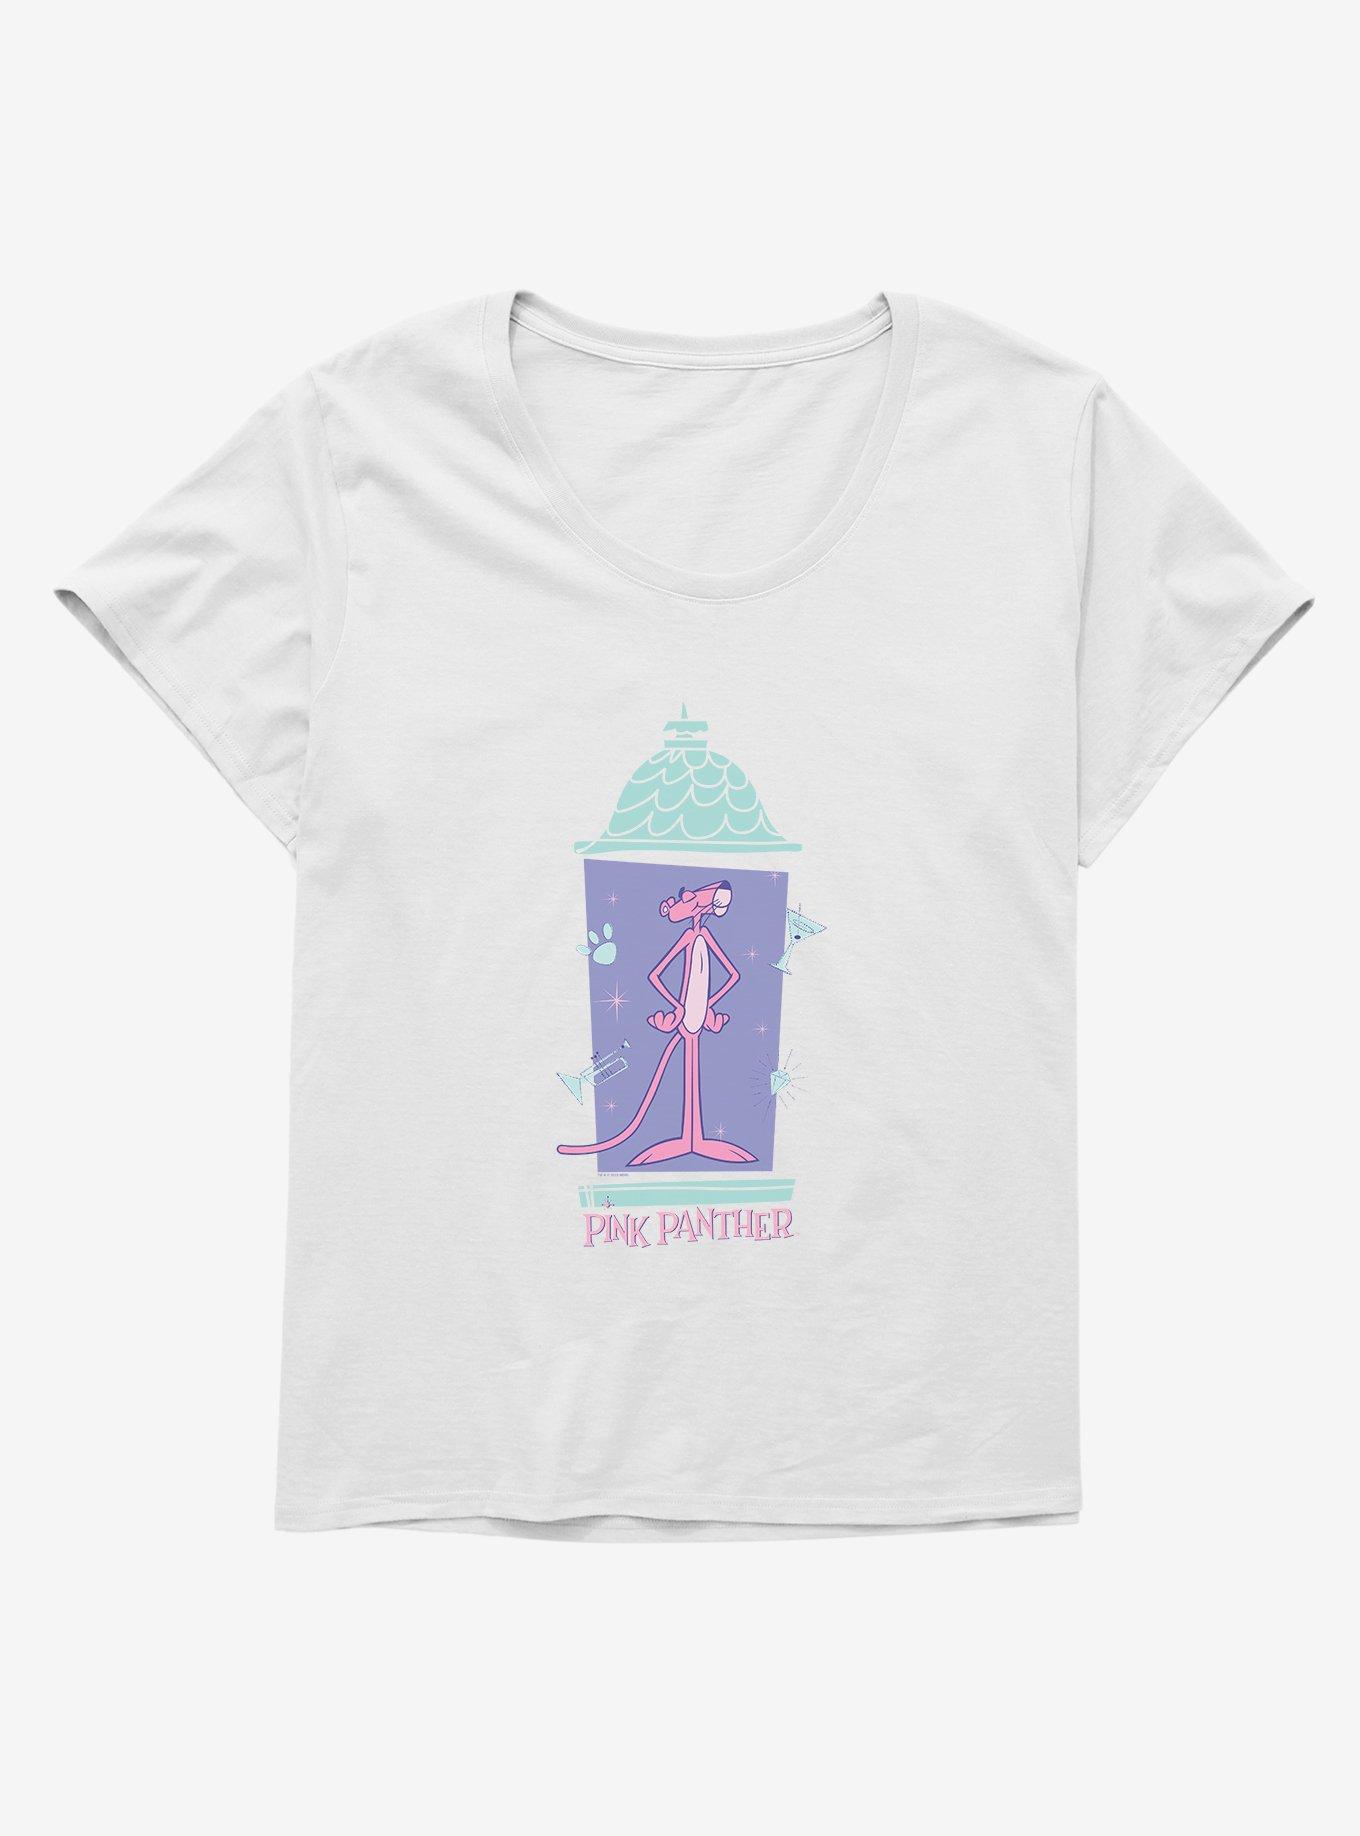 Pink Panther Swag Girls T-Shirt Plus